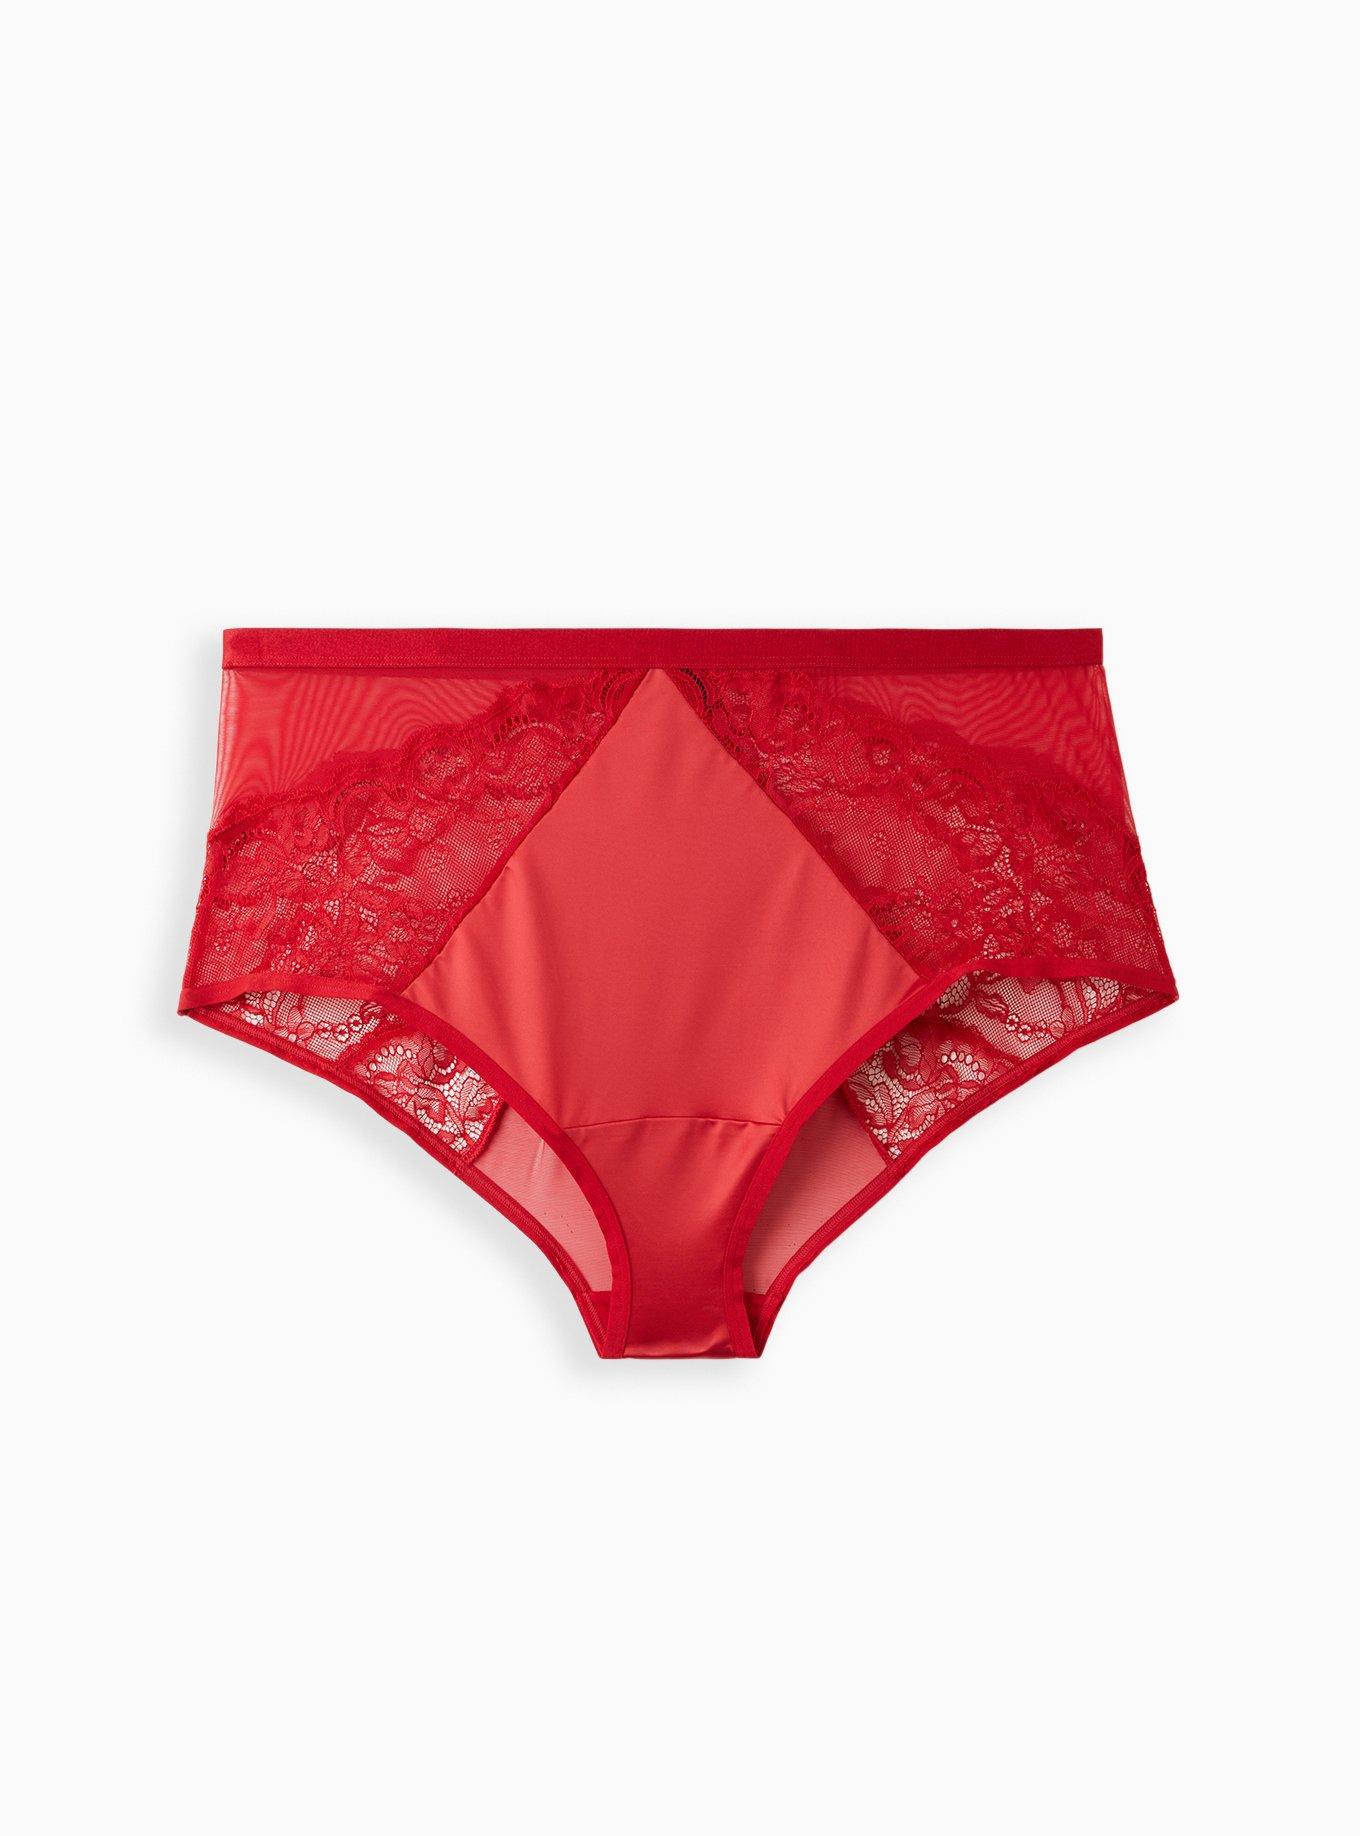 Poppy Red Cheeky Panties // Seamless Luxury Panties // EBY™